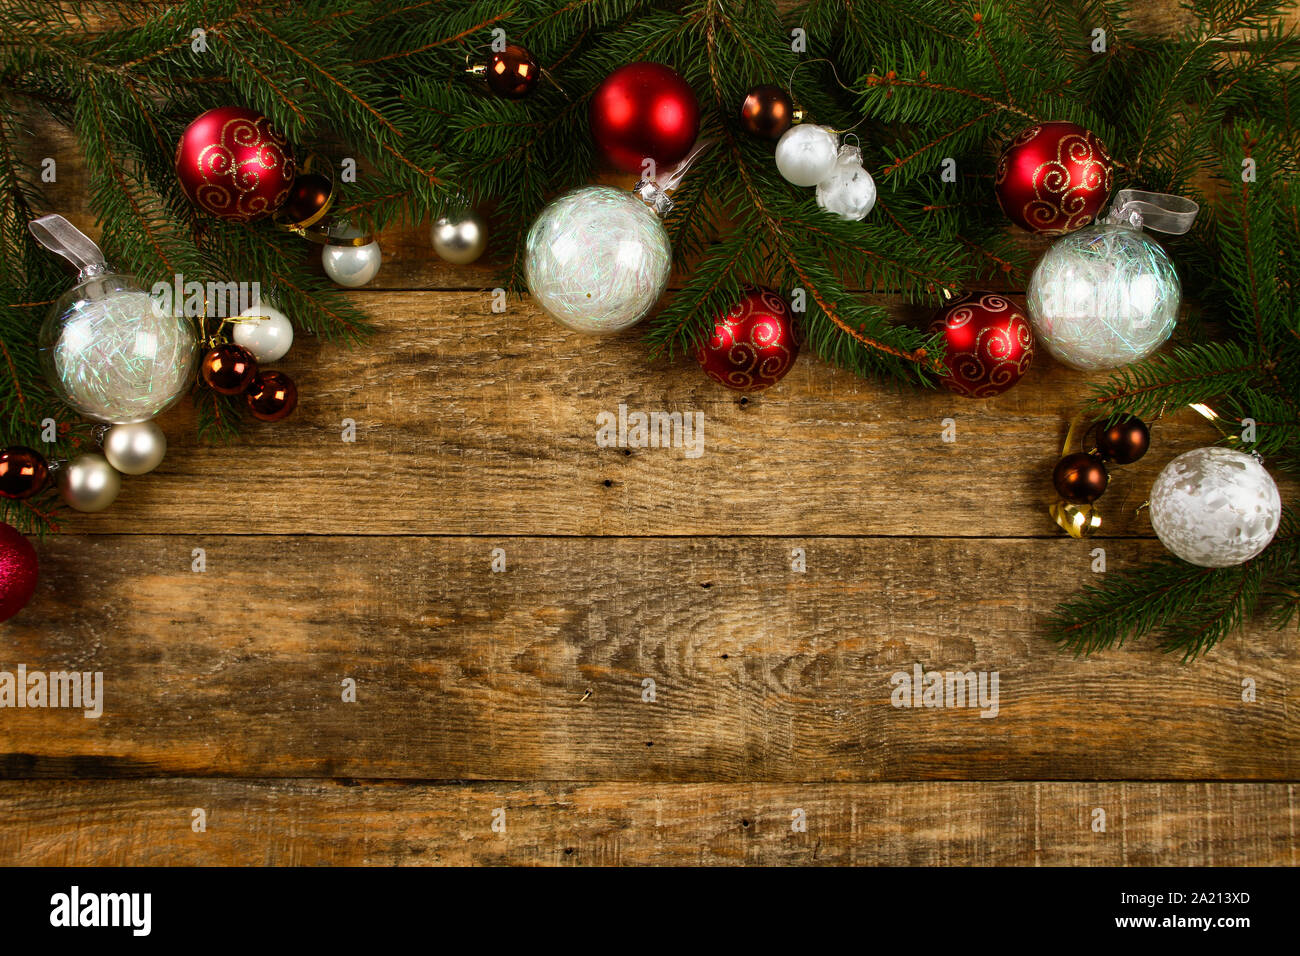 Weihnachten Hintergrund mit Holz- Hintergrund, Pin, Weihnachtskugeln, flache Bauform Stockfoto